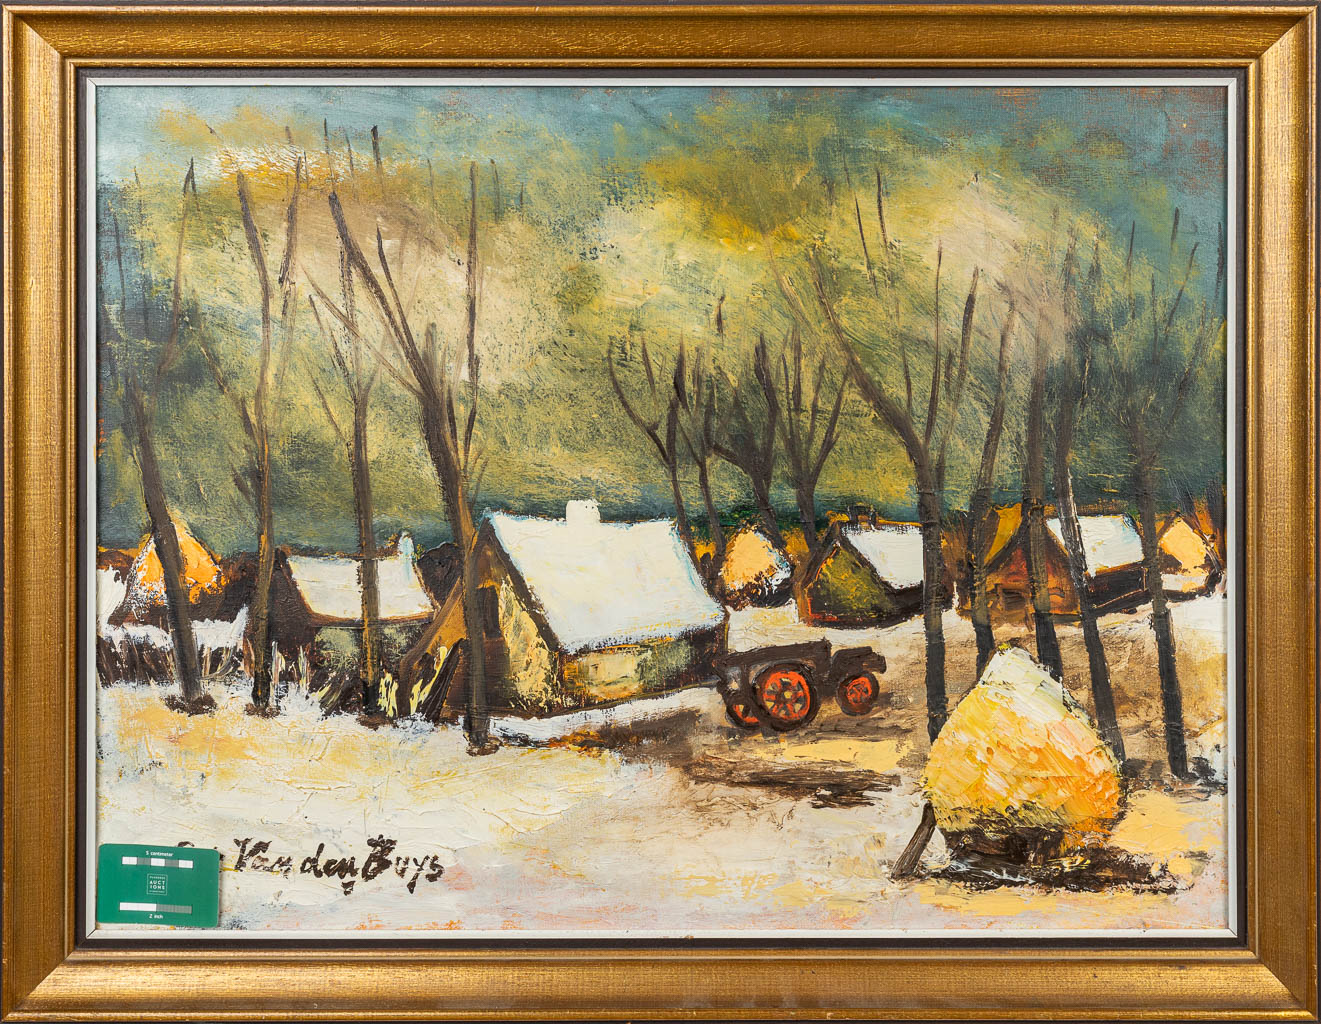 Piet VAN DEN BUYS (1935) 'Winterlandscape' a painting, oil on canvas. (80 x 60 cm)